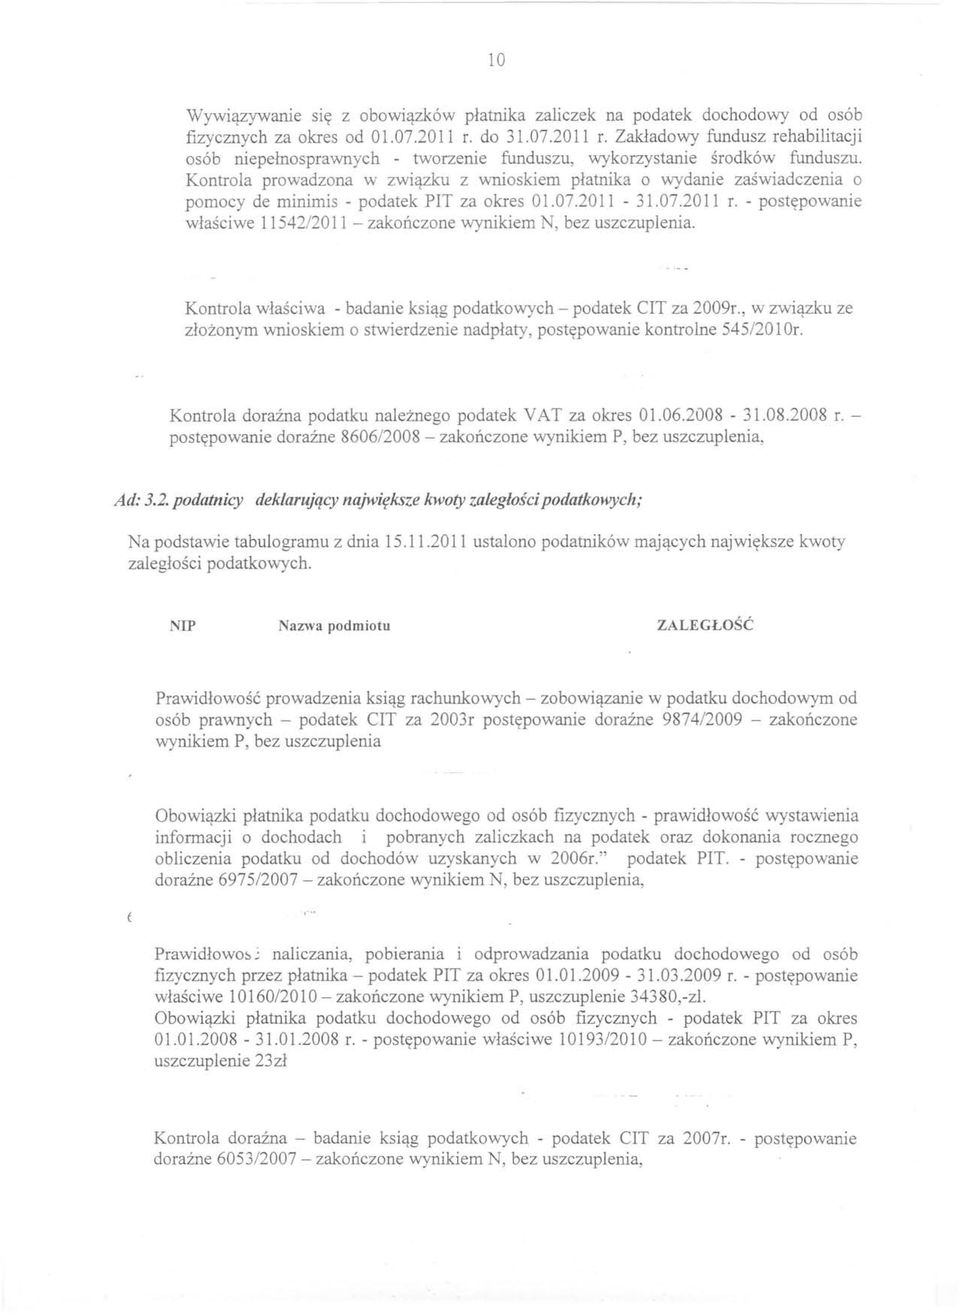 Kontrola prowadzona w związku z wnioskiem płatnika o wydanie zaświadczenia o pomocy de minimis - podatek PIT za okres 01.07.2011-31.07.2011 r.